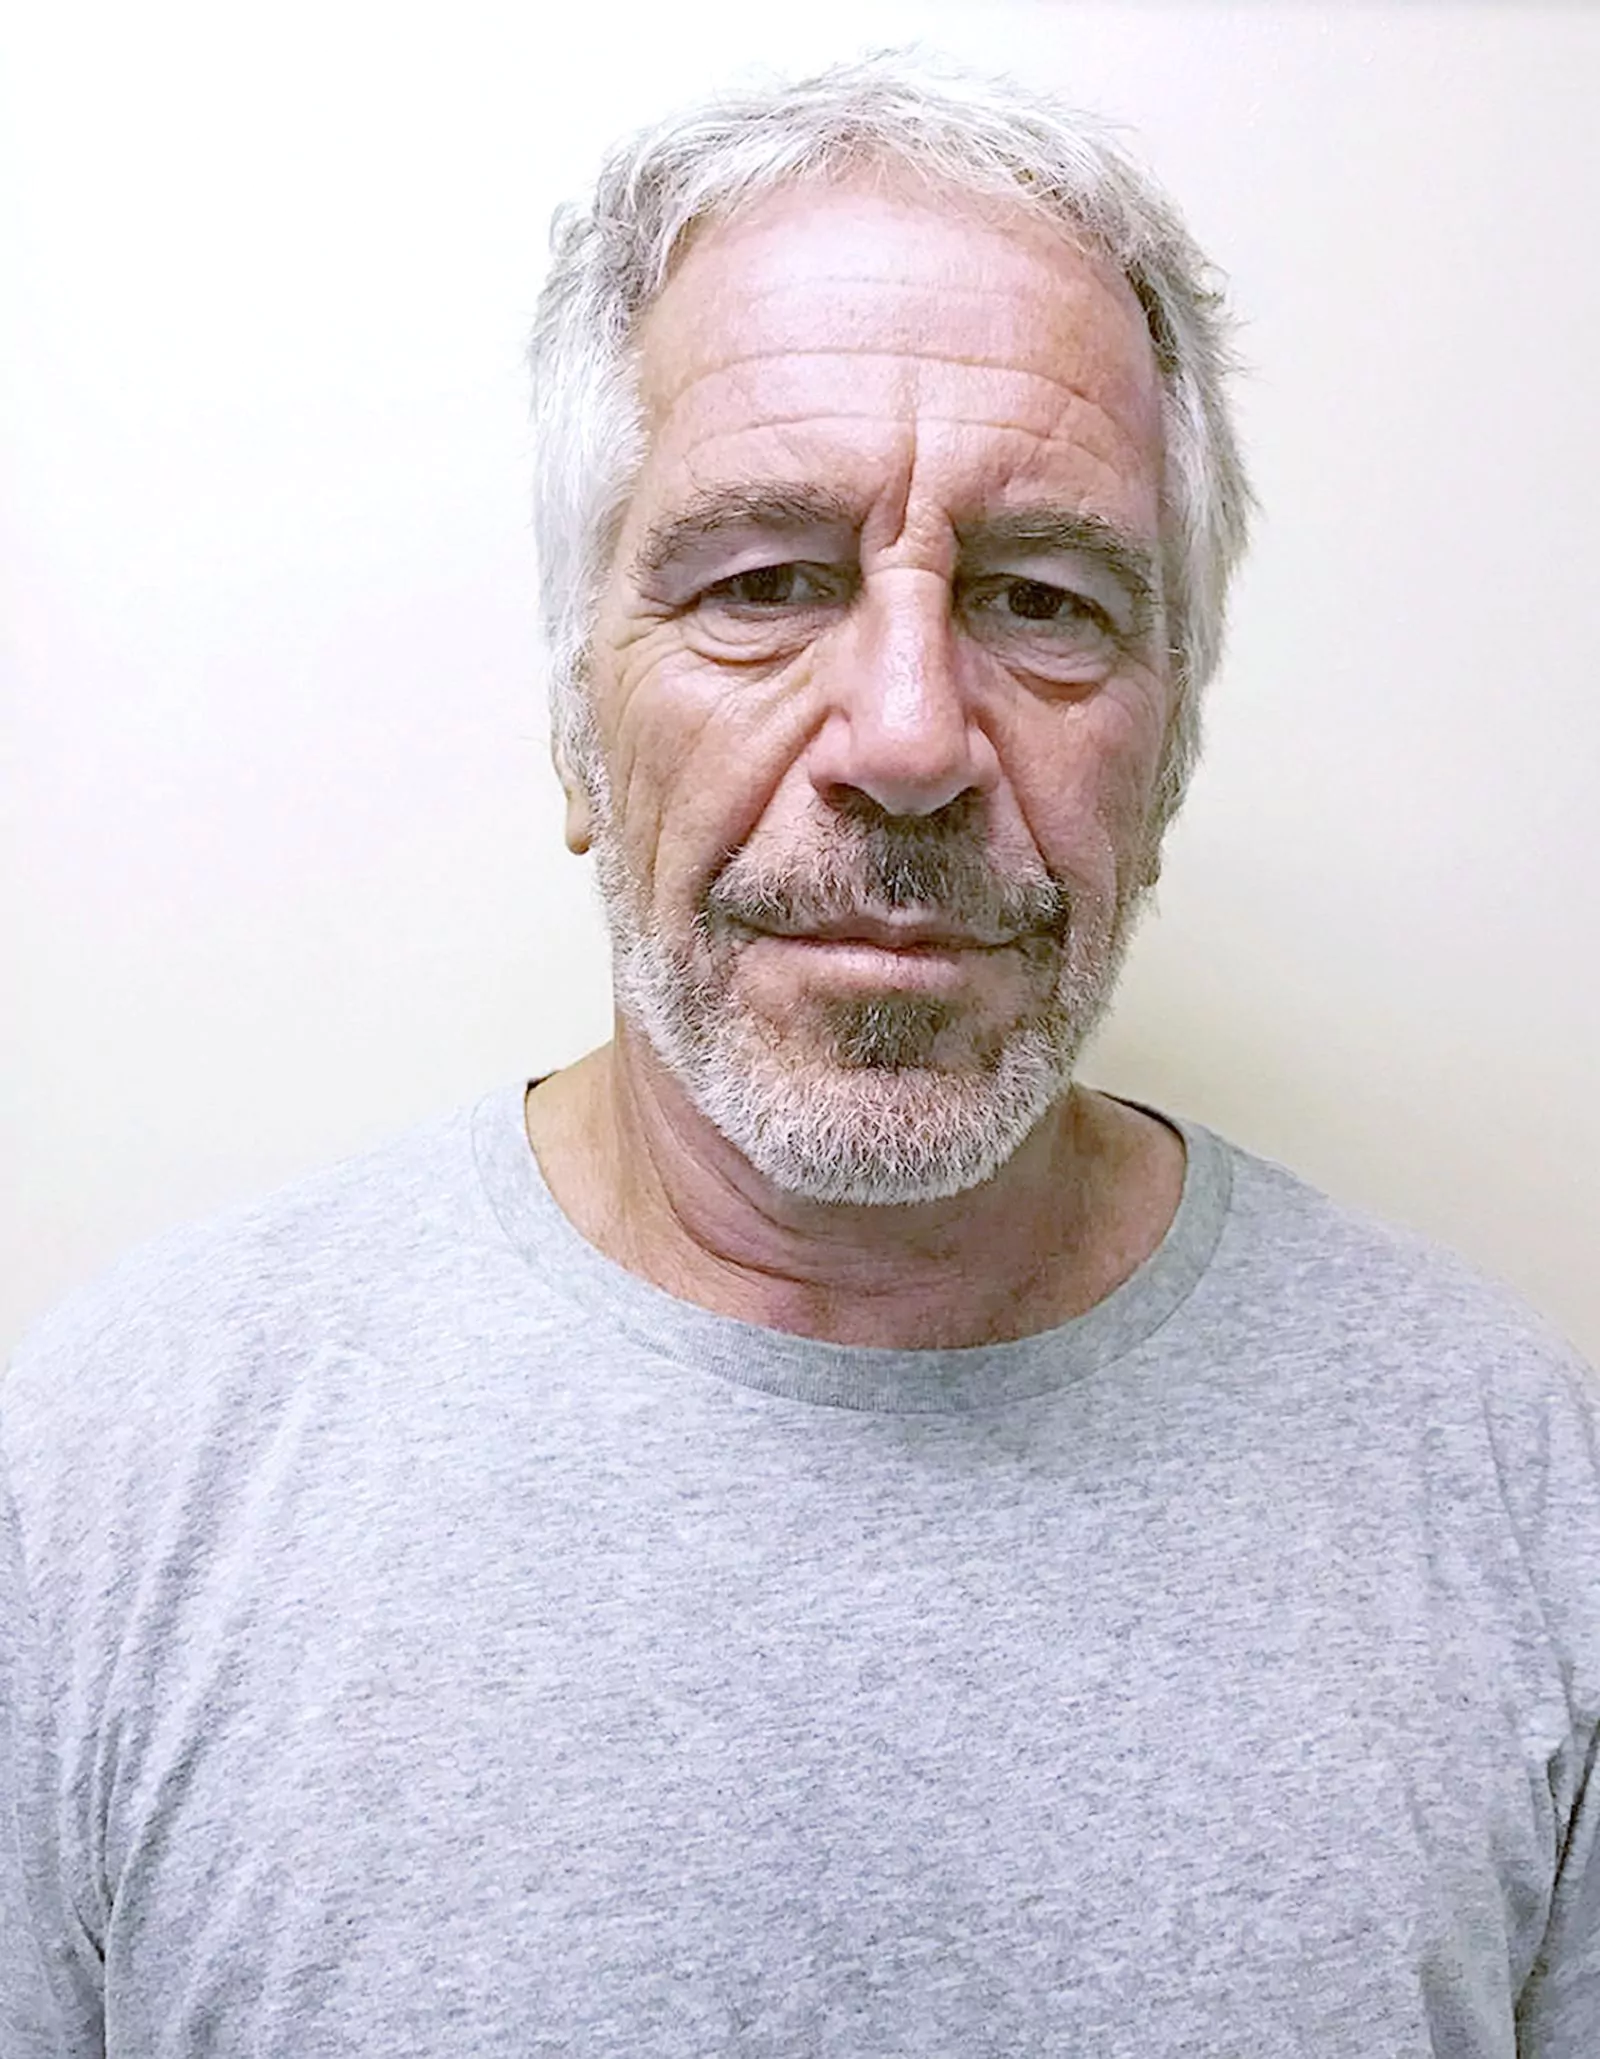 Джеффри Эпштейн был найден мертвым в своей камере в исправительном центре Метрополитен в Нью-Йорке в 2019 году